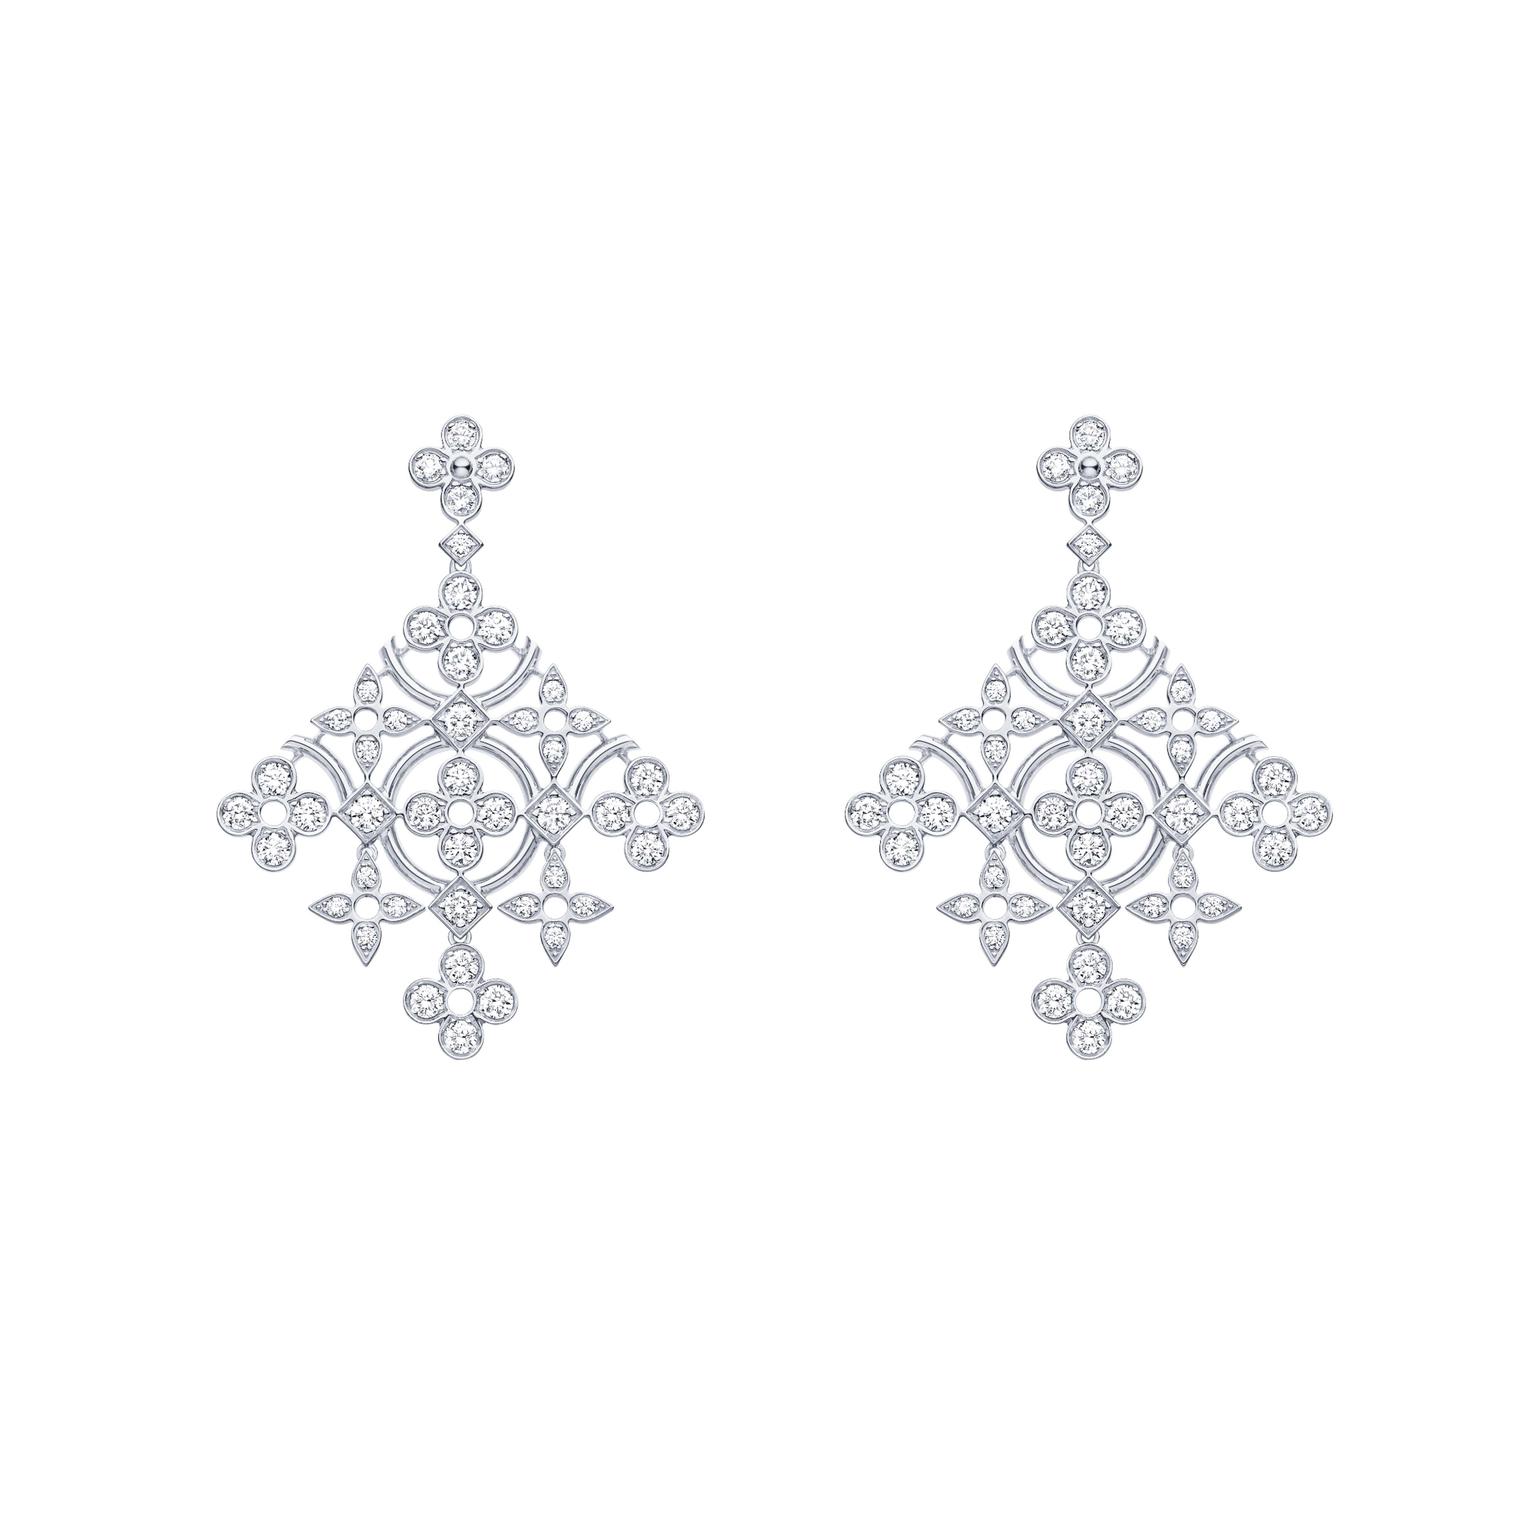 Louis Vuitton Dentelle de Monogram diamond earrings in white gold.